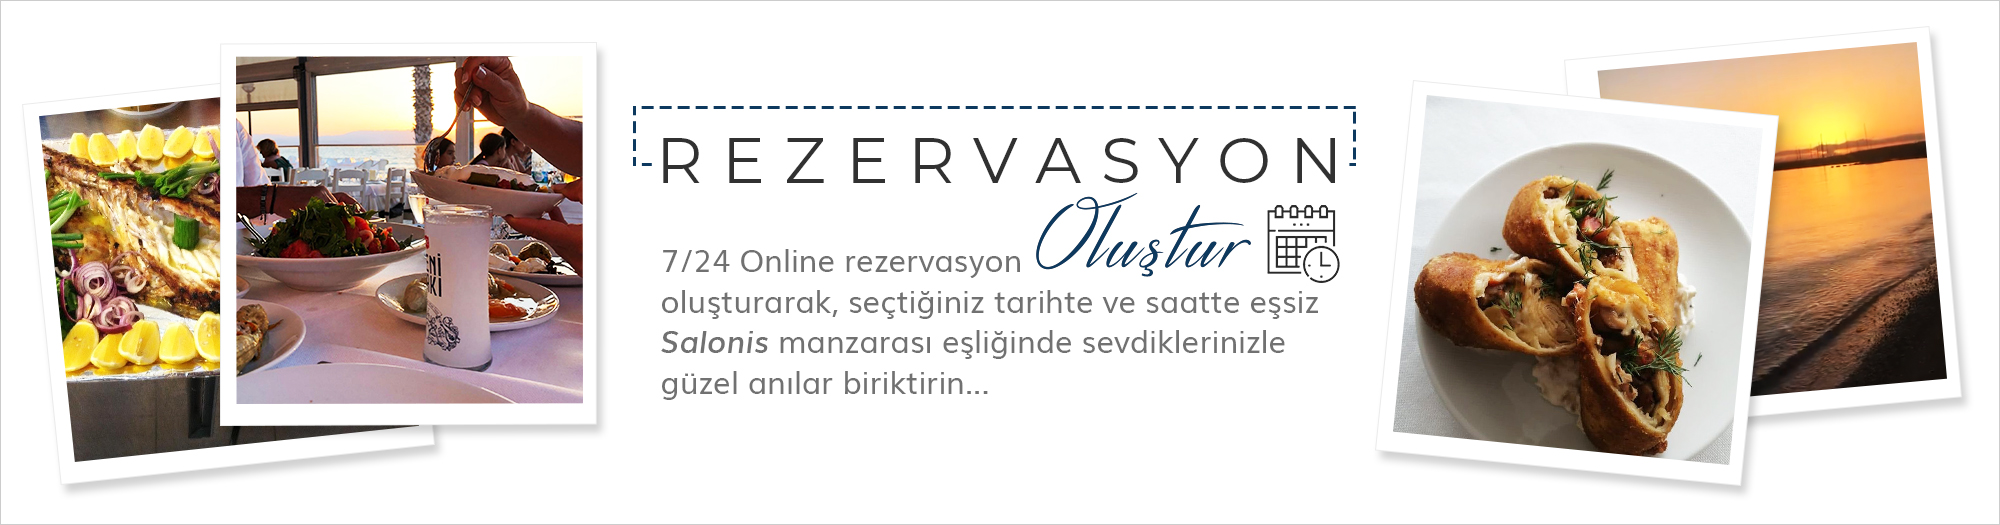 rezervasyon_olustur_banner